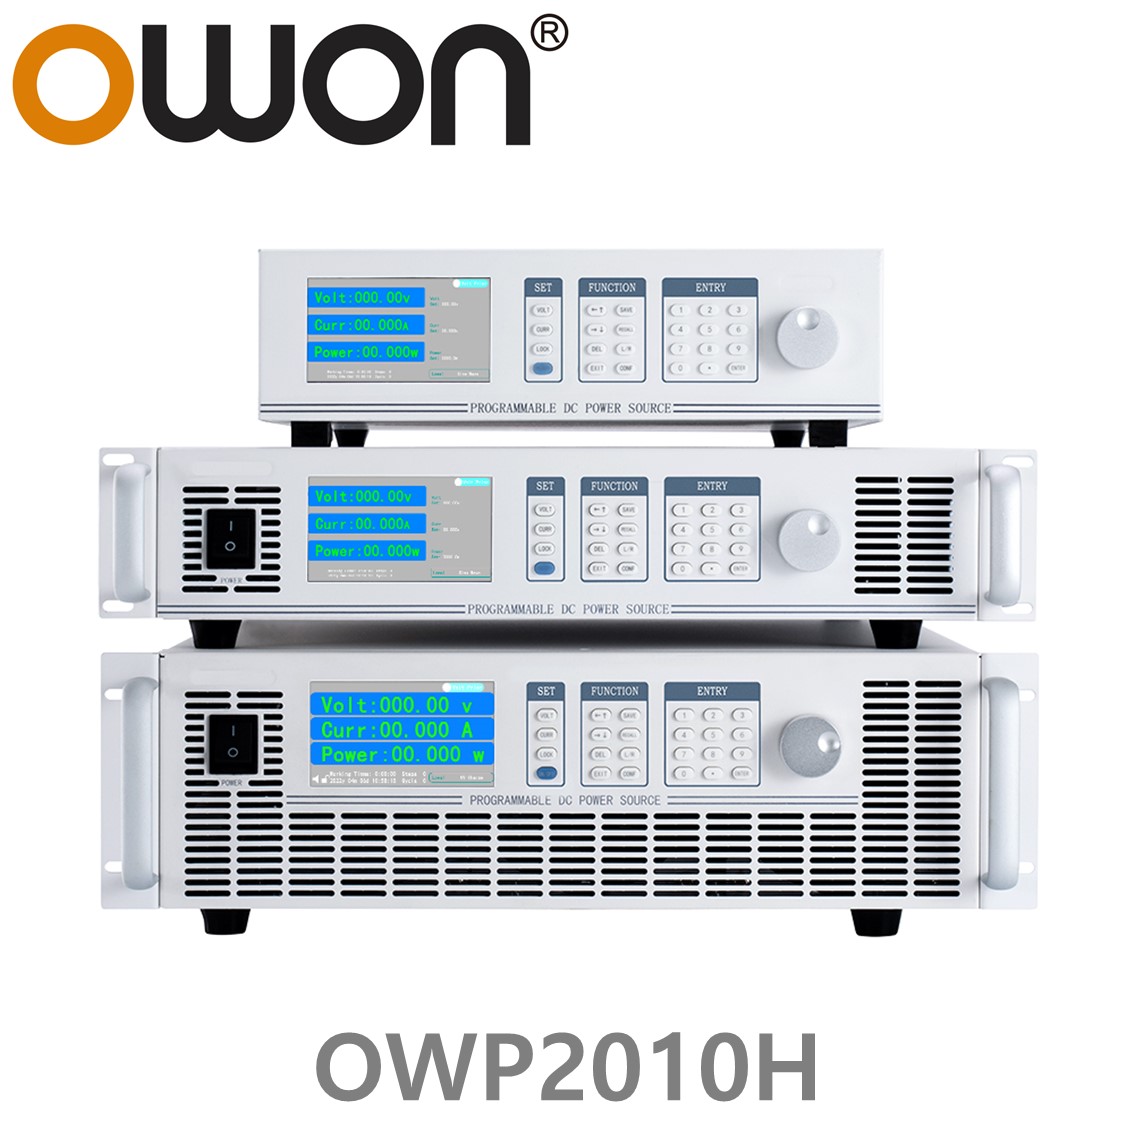 [ OWON ] OWP2010H 고전력 DC파워서플라이, 0-100.00V / 0-45.000A / 2000.0W DC전원공급장치